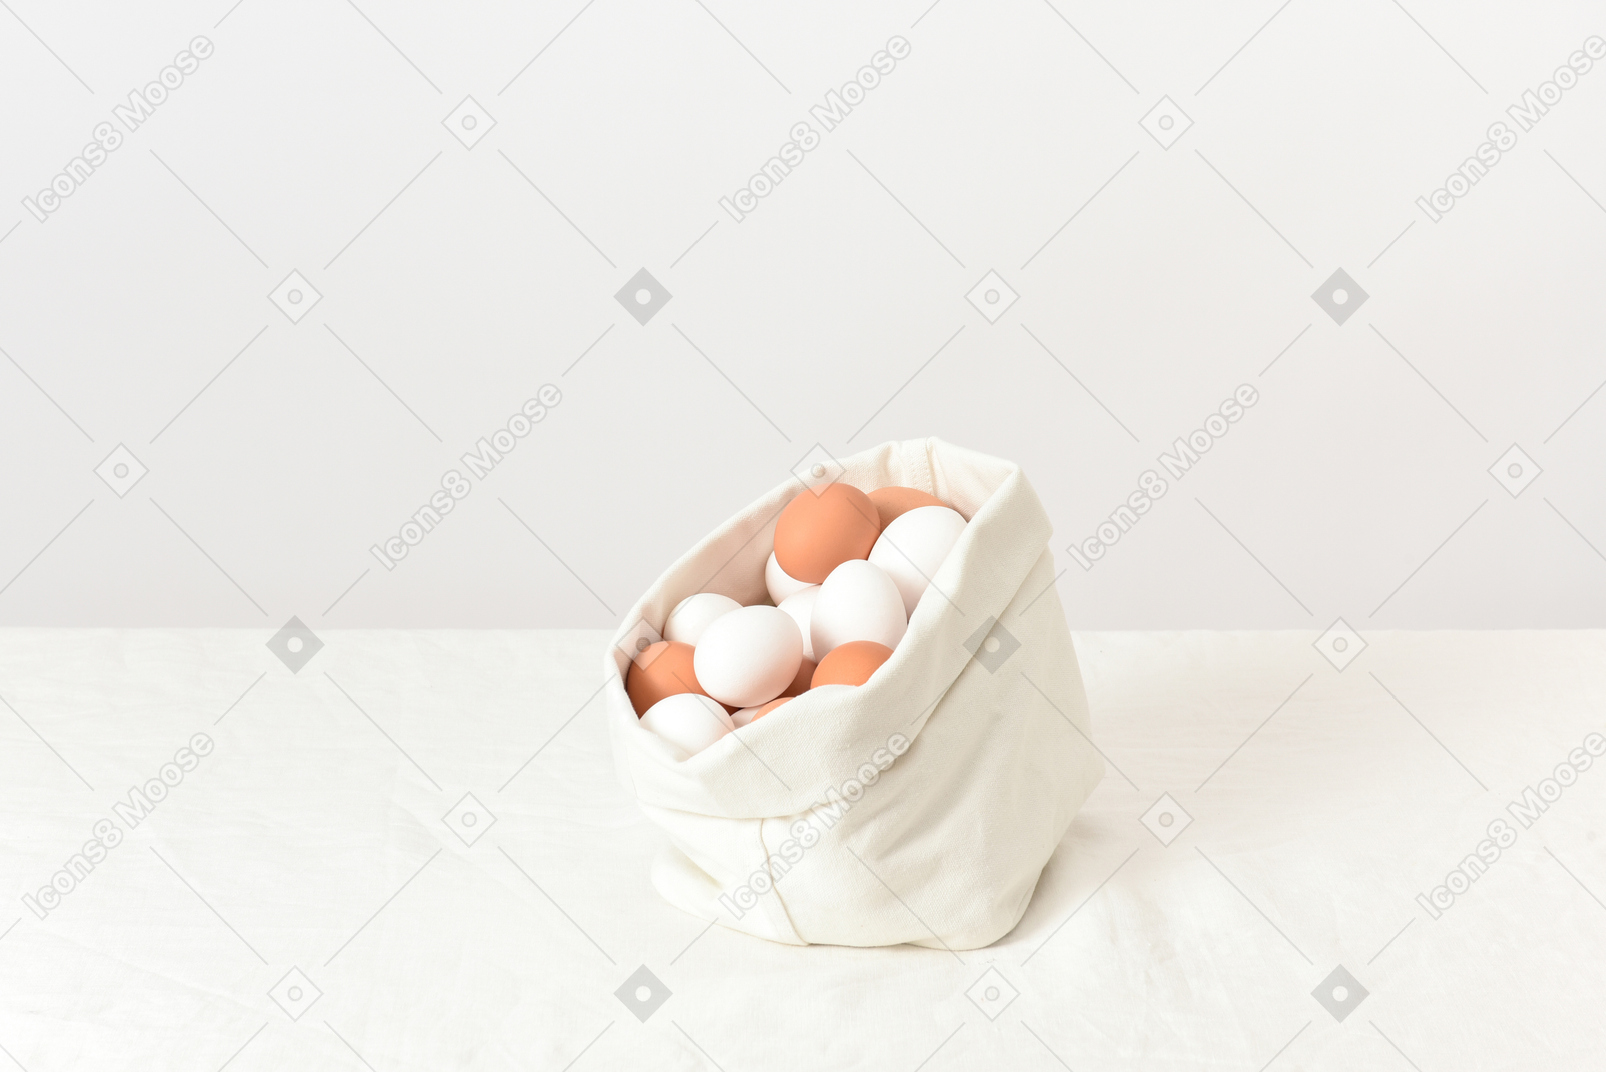 Sacchetto di lino con uova di gallina